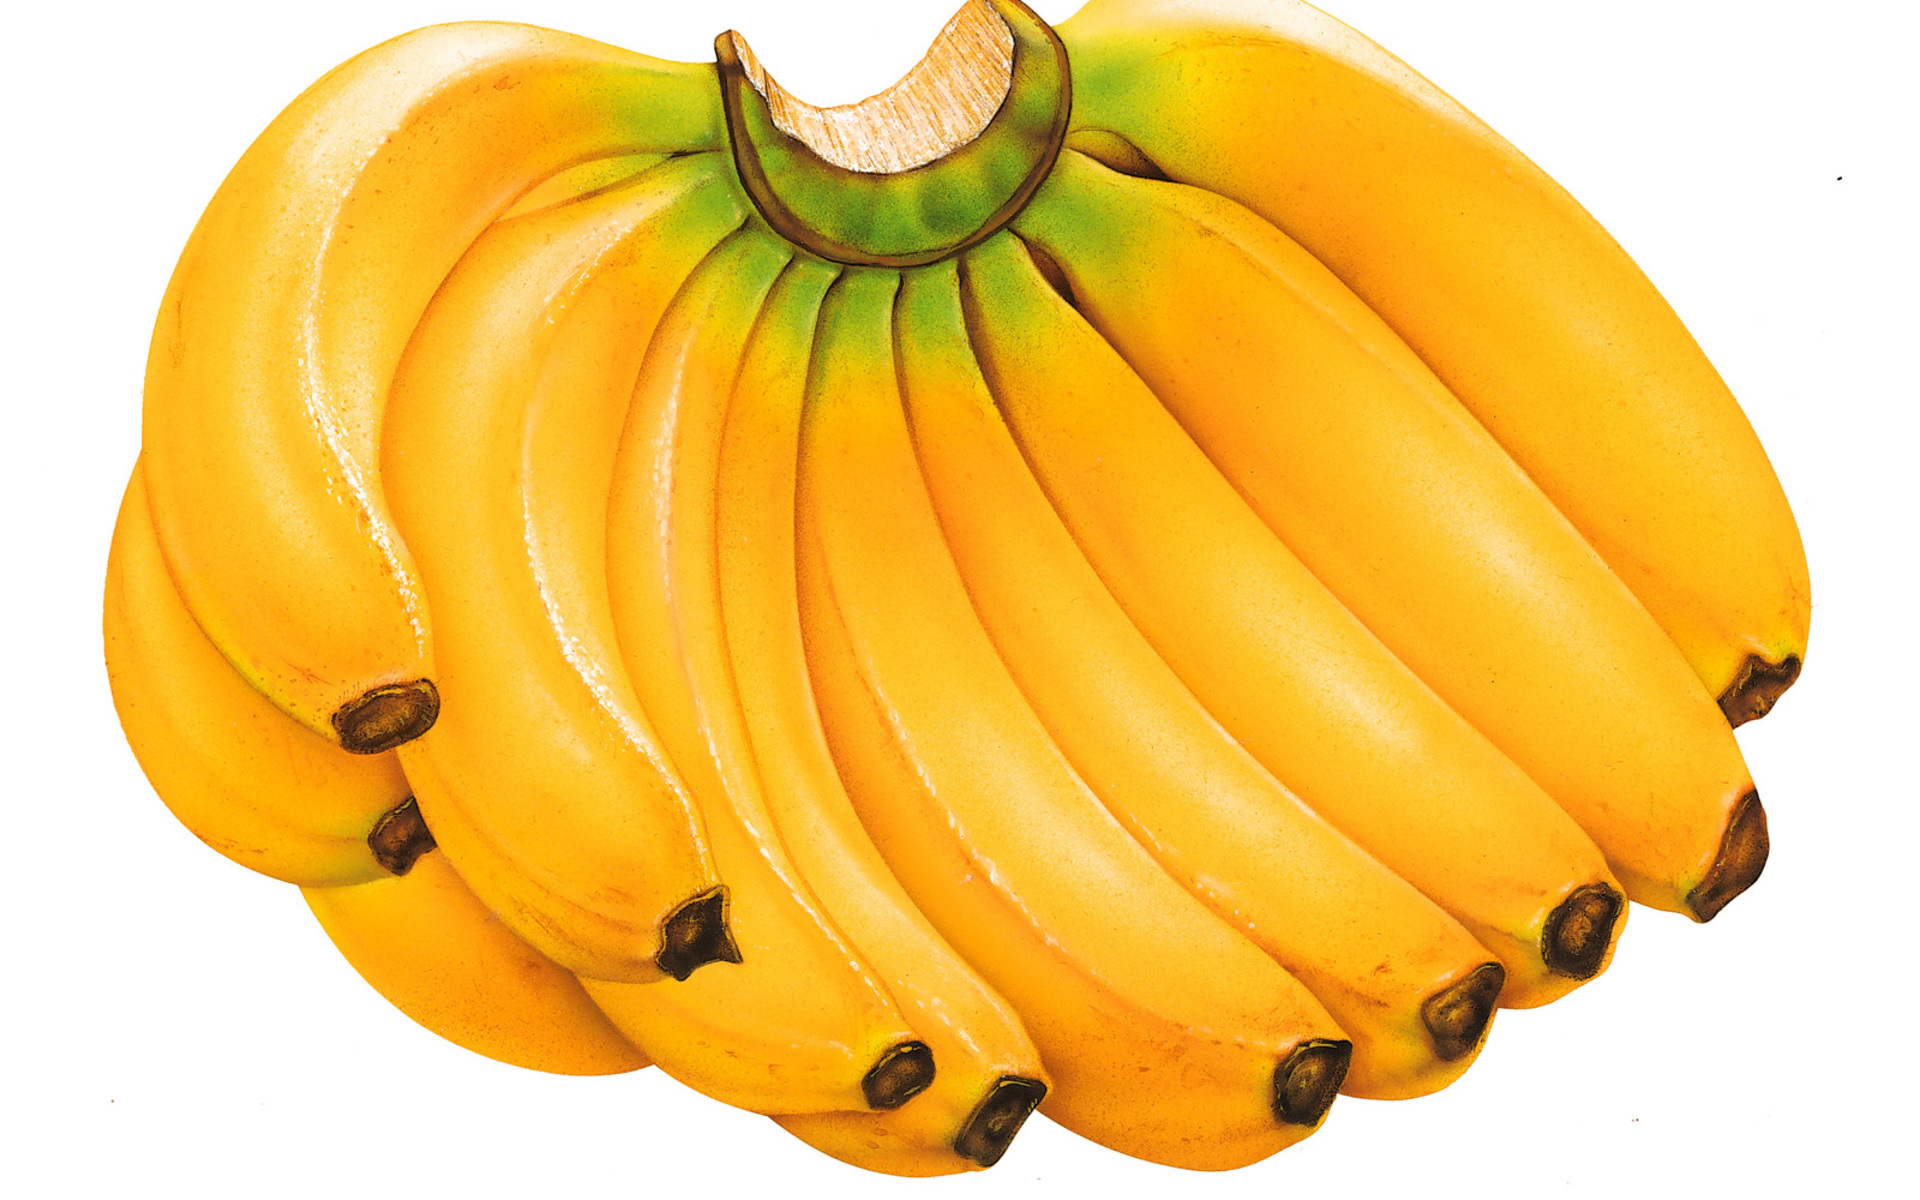 фрукты, еда, бананы, белый фон - обои на рабочий стол